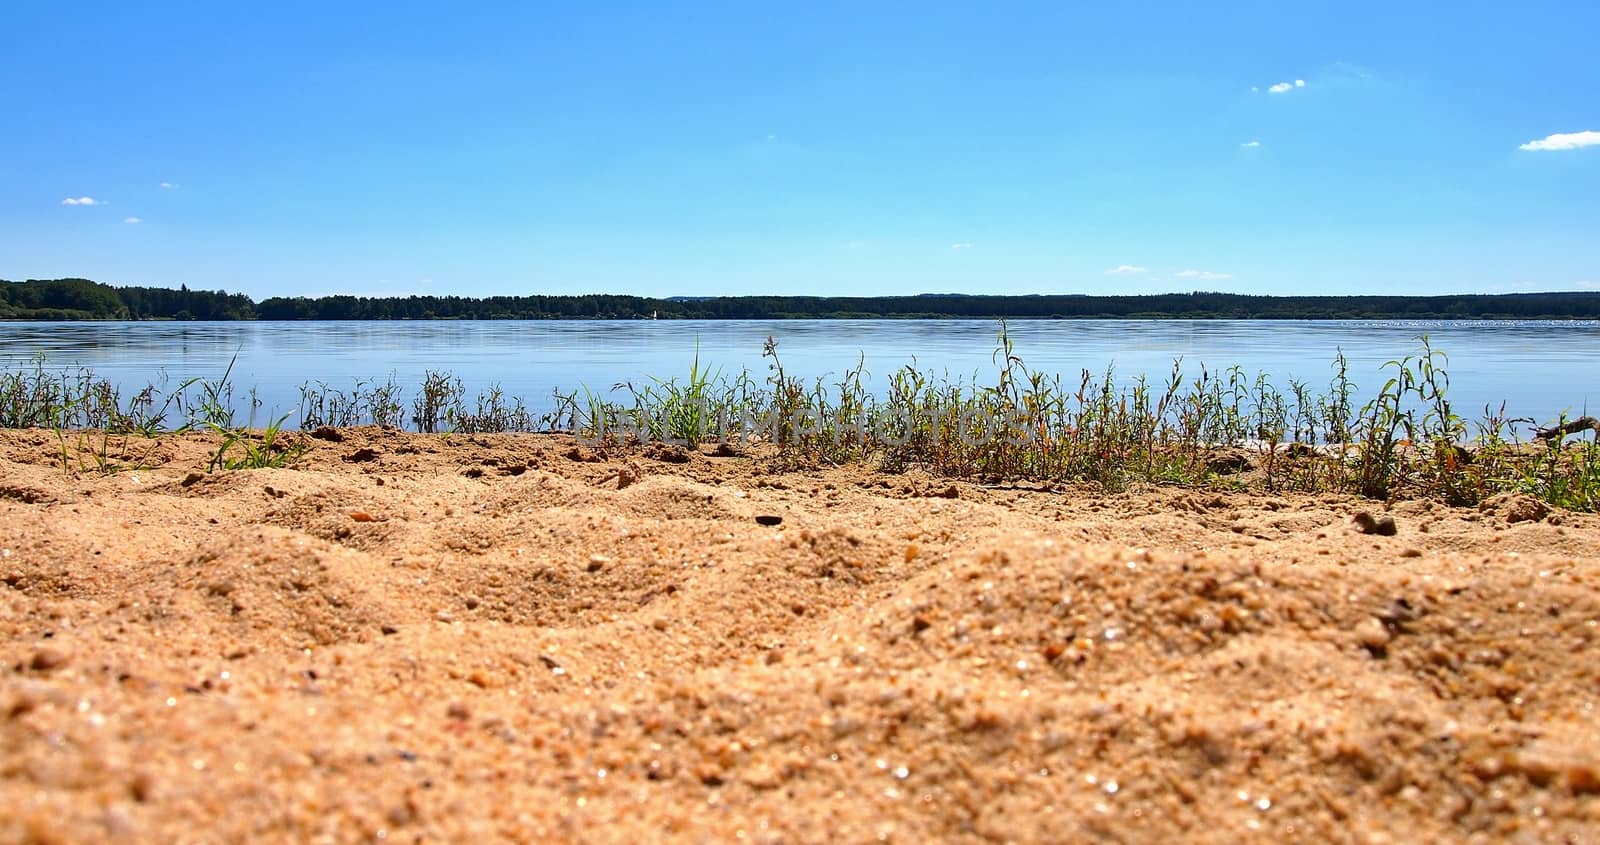 Sandy shore of Dvoriste pond near Trebon city by hamik